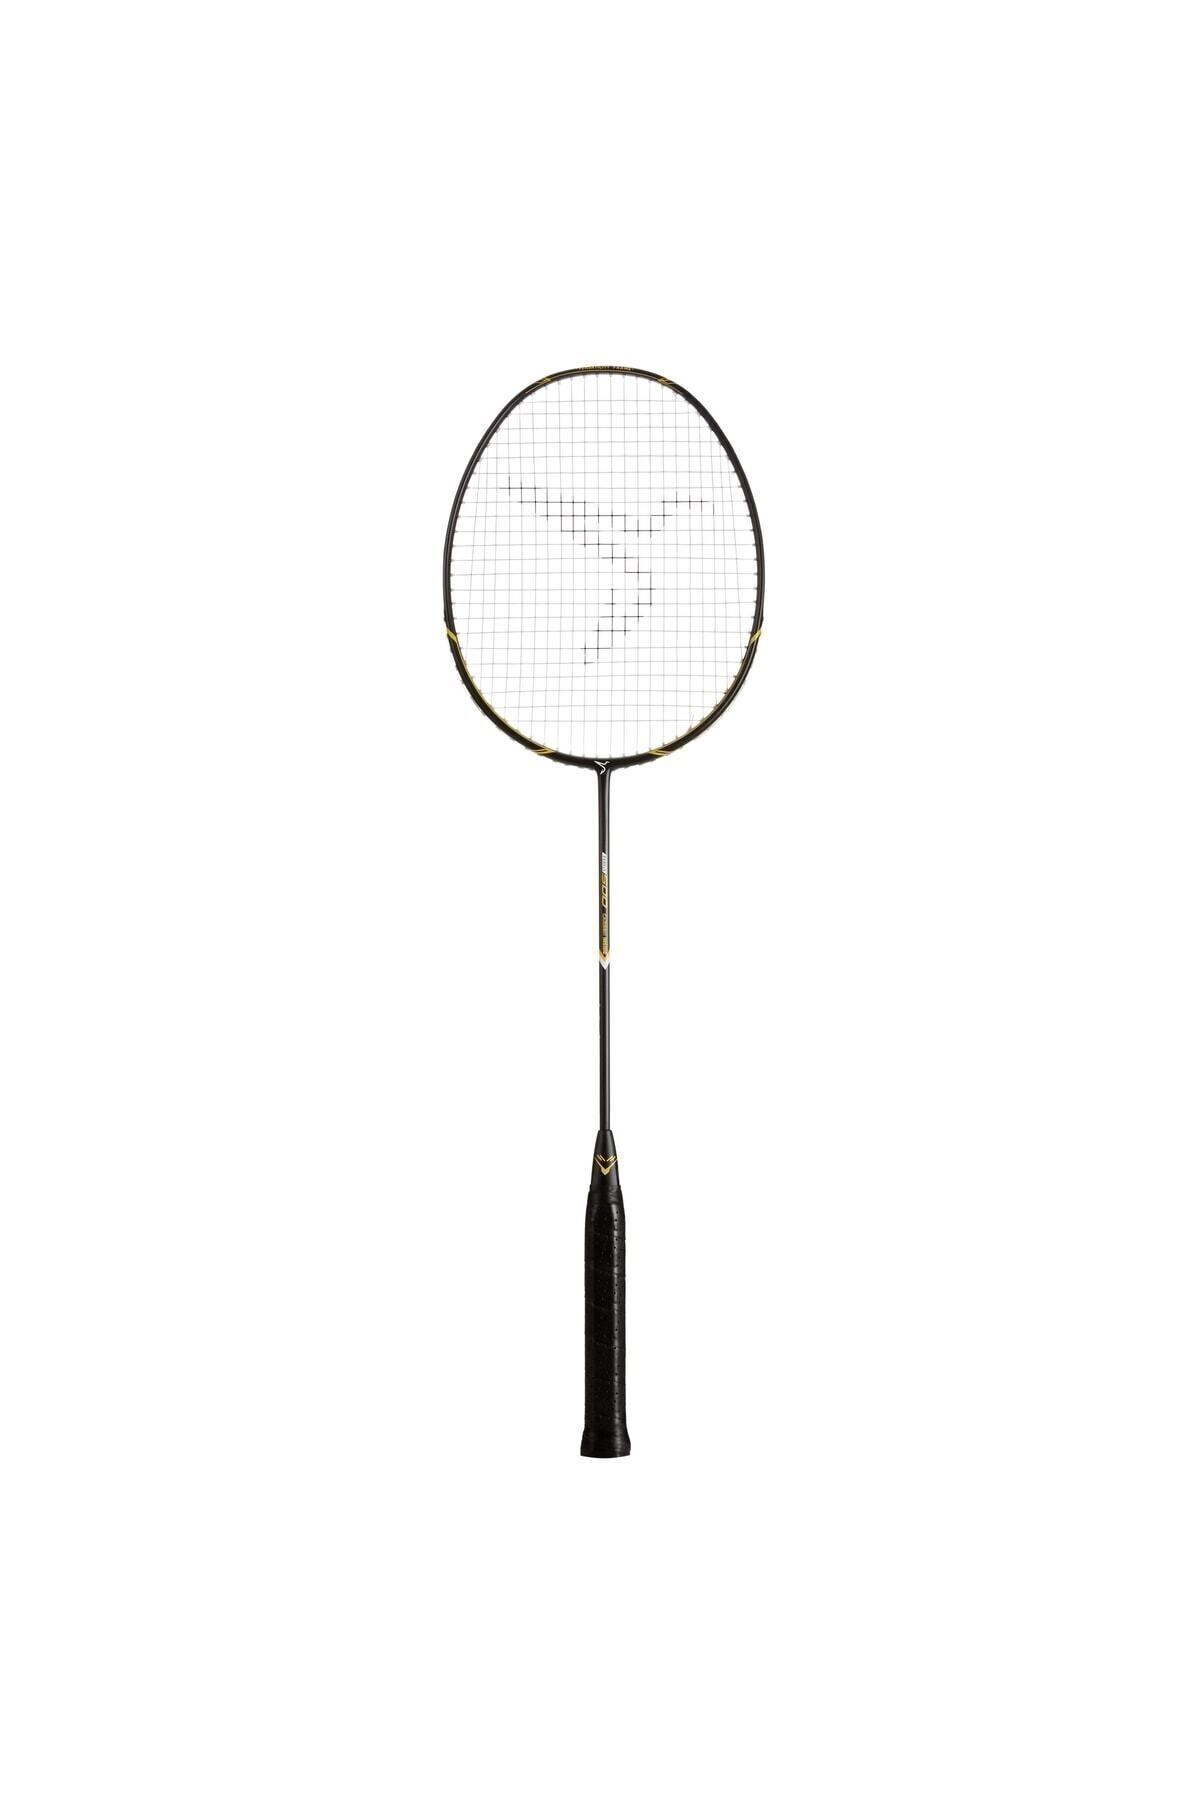 Decathlon Siyah Perfly Badminton Raketi - Siyah / Sarı - Br 500